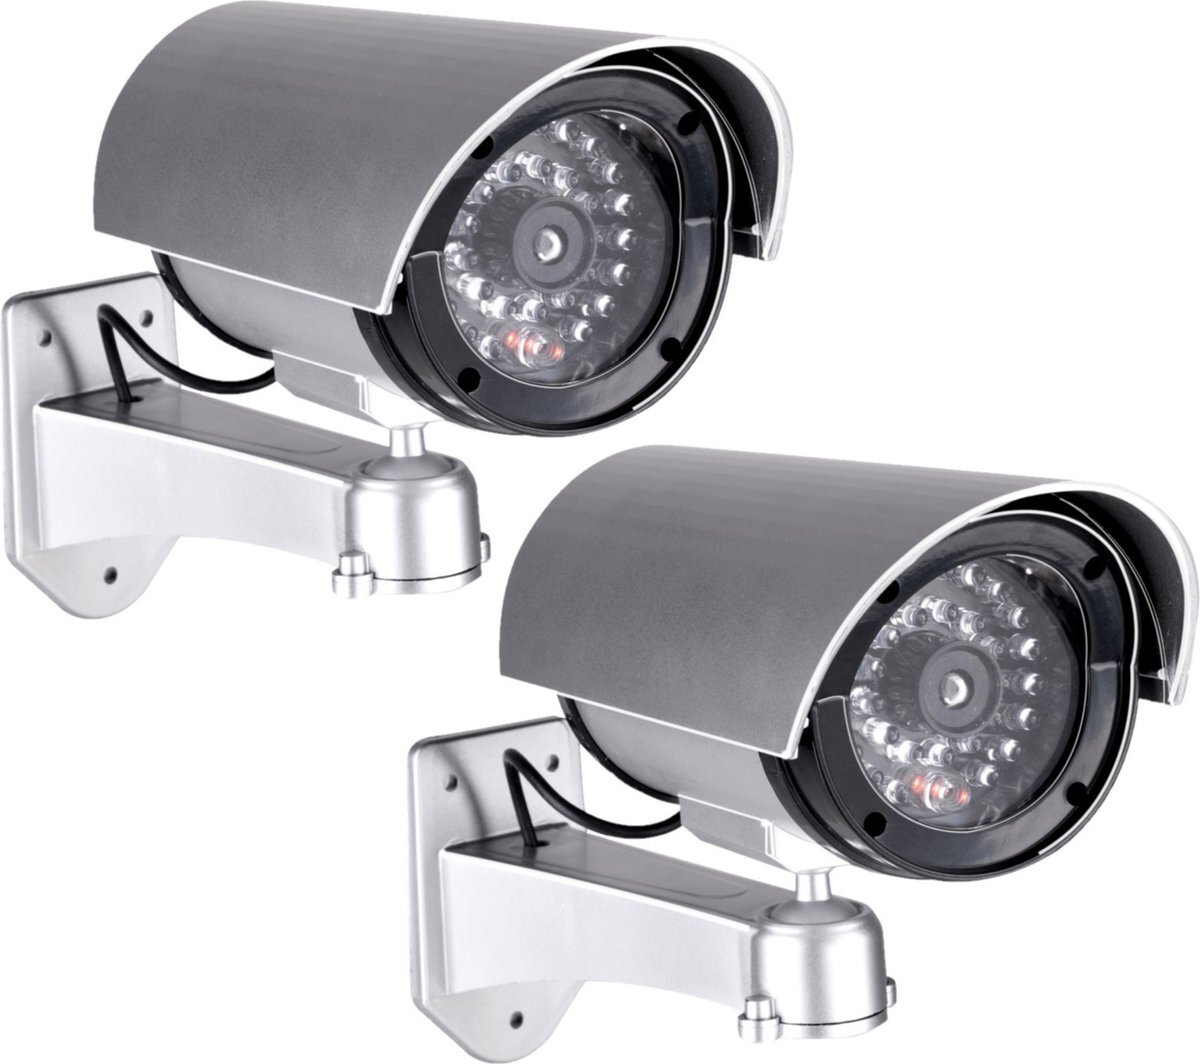 Grundig Pakket van 2x stuks dummy beveiligingscameras met LED 11 x 8 x 17 cm - Inbraakbeveiliging - voor binnen en buiten zilver